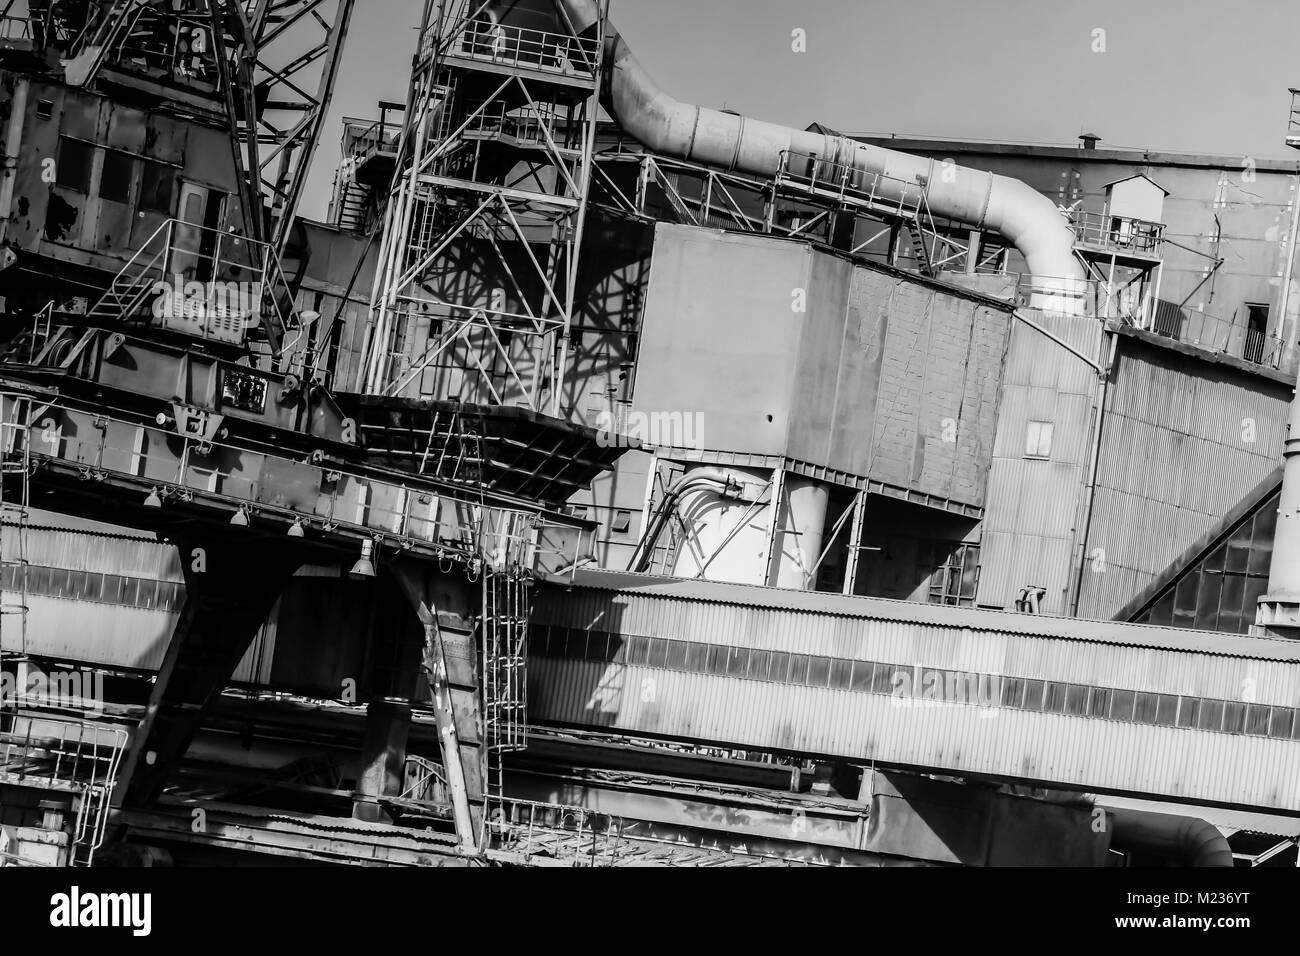 Werft Danzig, Polen. Retro Style schwarz und weiß. Krane, alte Werft Gebäude, Rusty Strukturen. Stockfoto